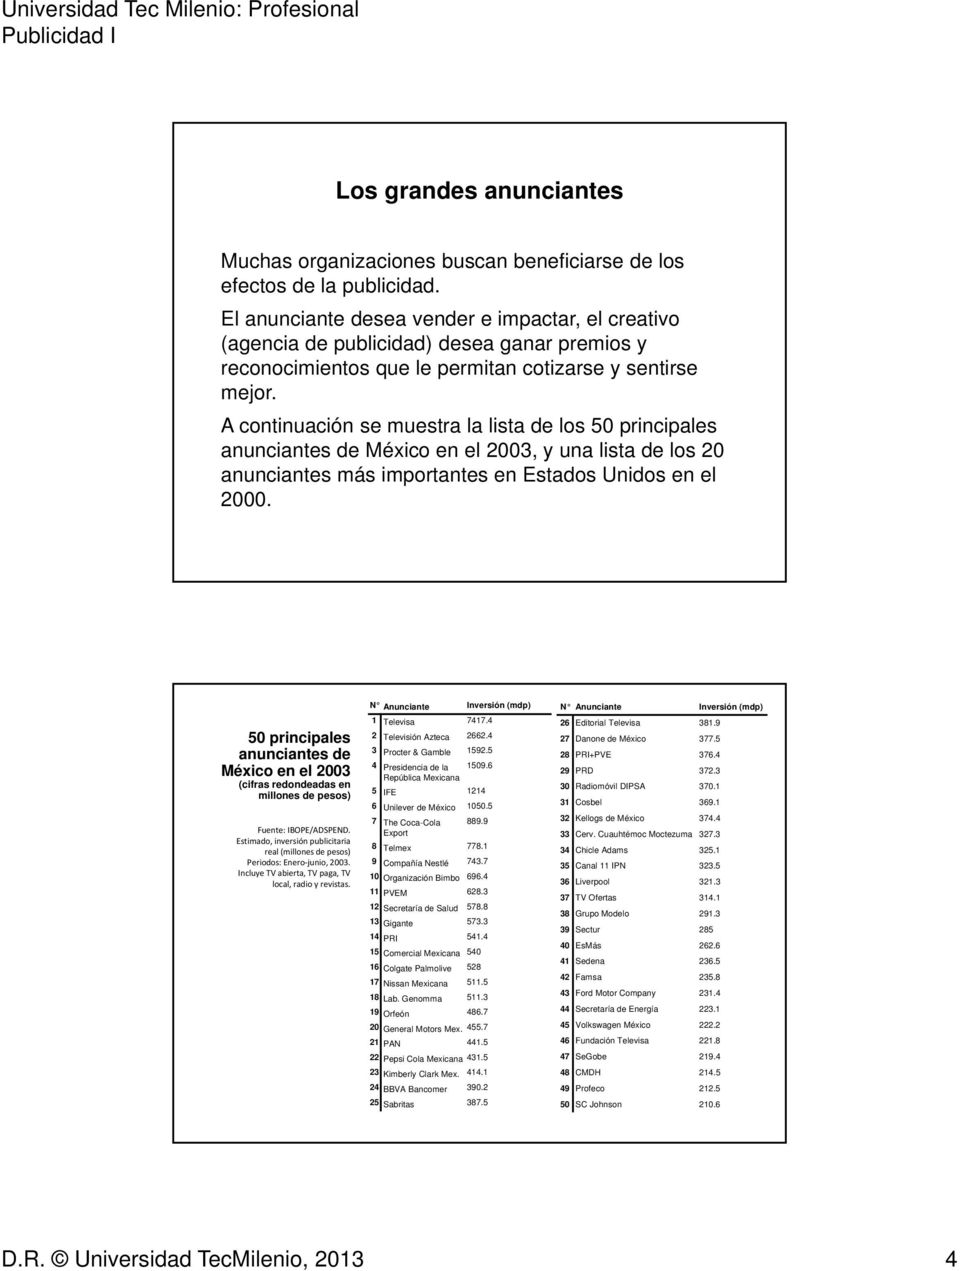 A continuación se muestra la lista de los 50 principales anunciantes de México en el 2003, y una lista de los 20 anunciantes más importantes en Estados Unidos en el 2000.